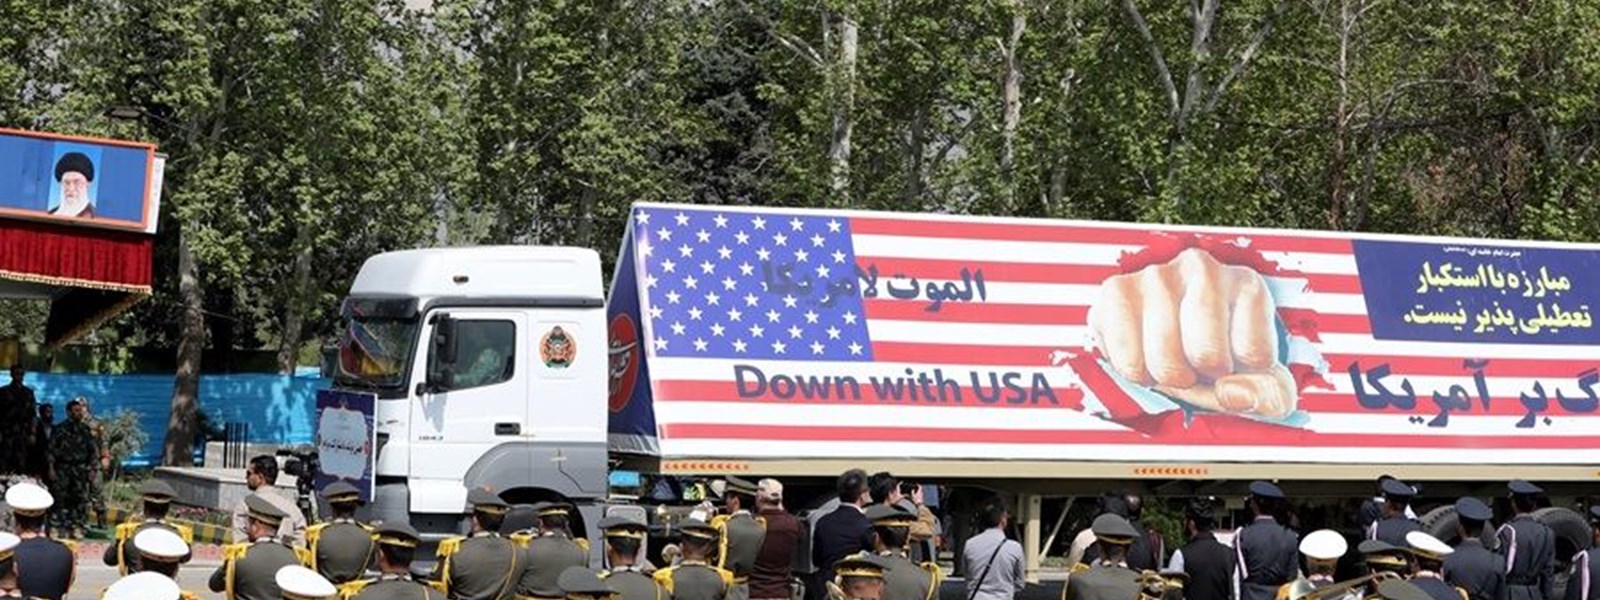 شاحنة إيرانية تحمل علم الولايات المتحدة مكتوب عليه "الموت لأميركا" (أ ف ب).